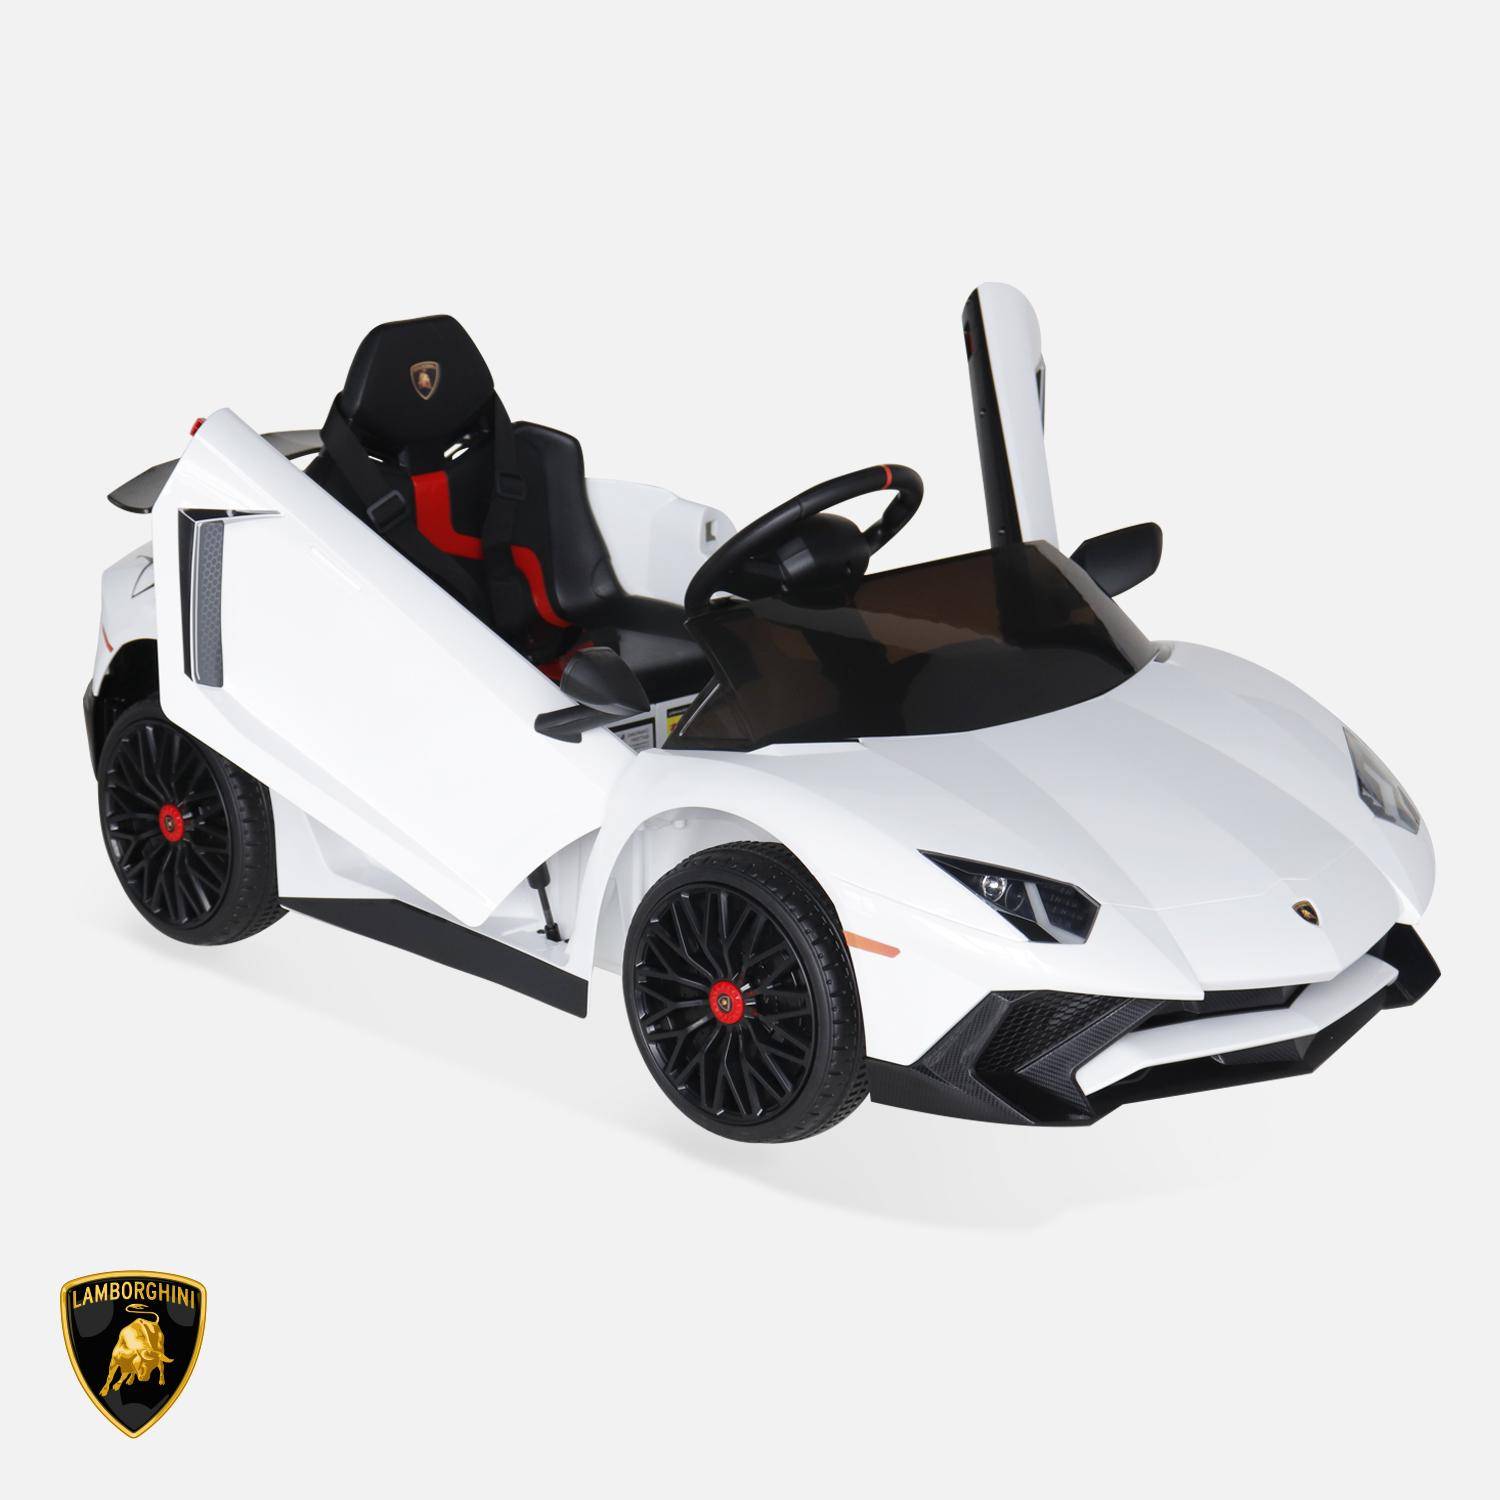 12V Lamborghini elektrische kinderauto, wit, 1 zitplaats, met radio, afstandsbediening, MP3, USB-poort en functionele koplampen Photo3